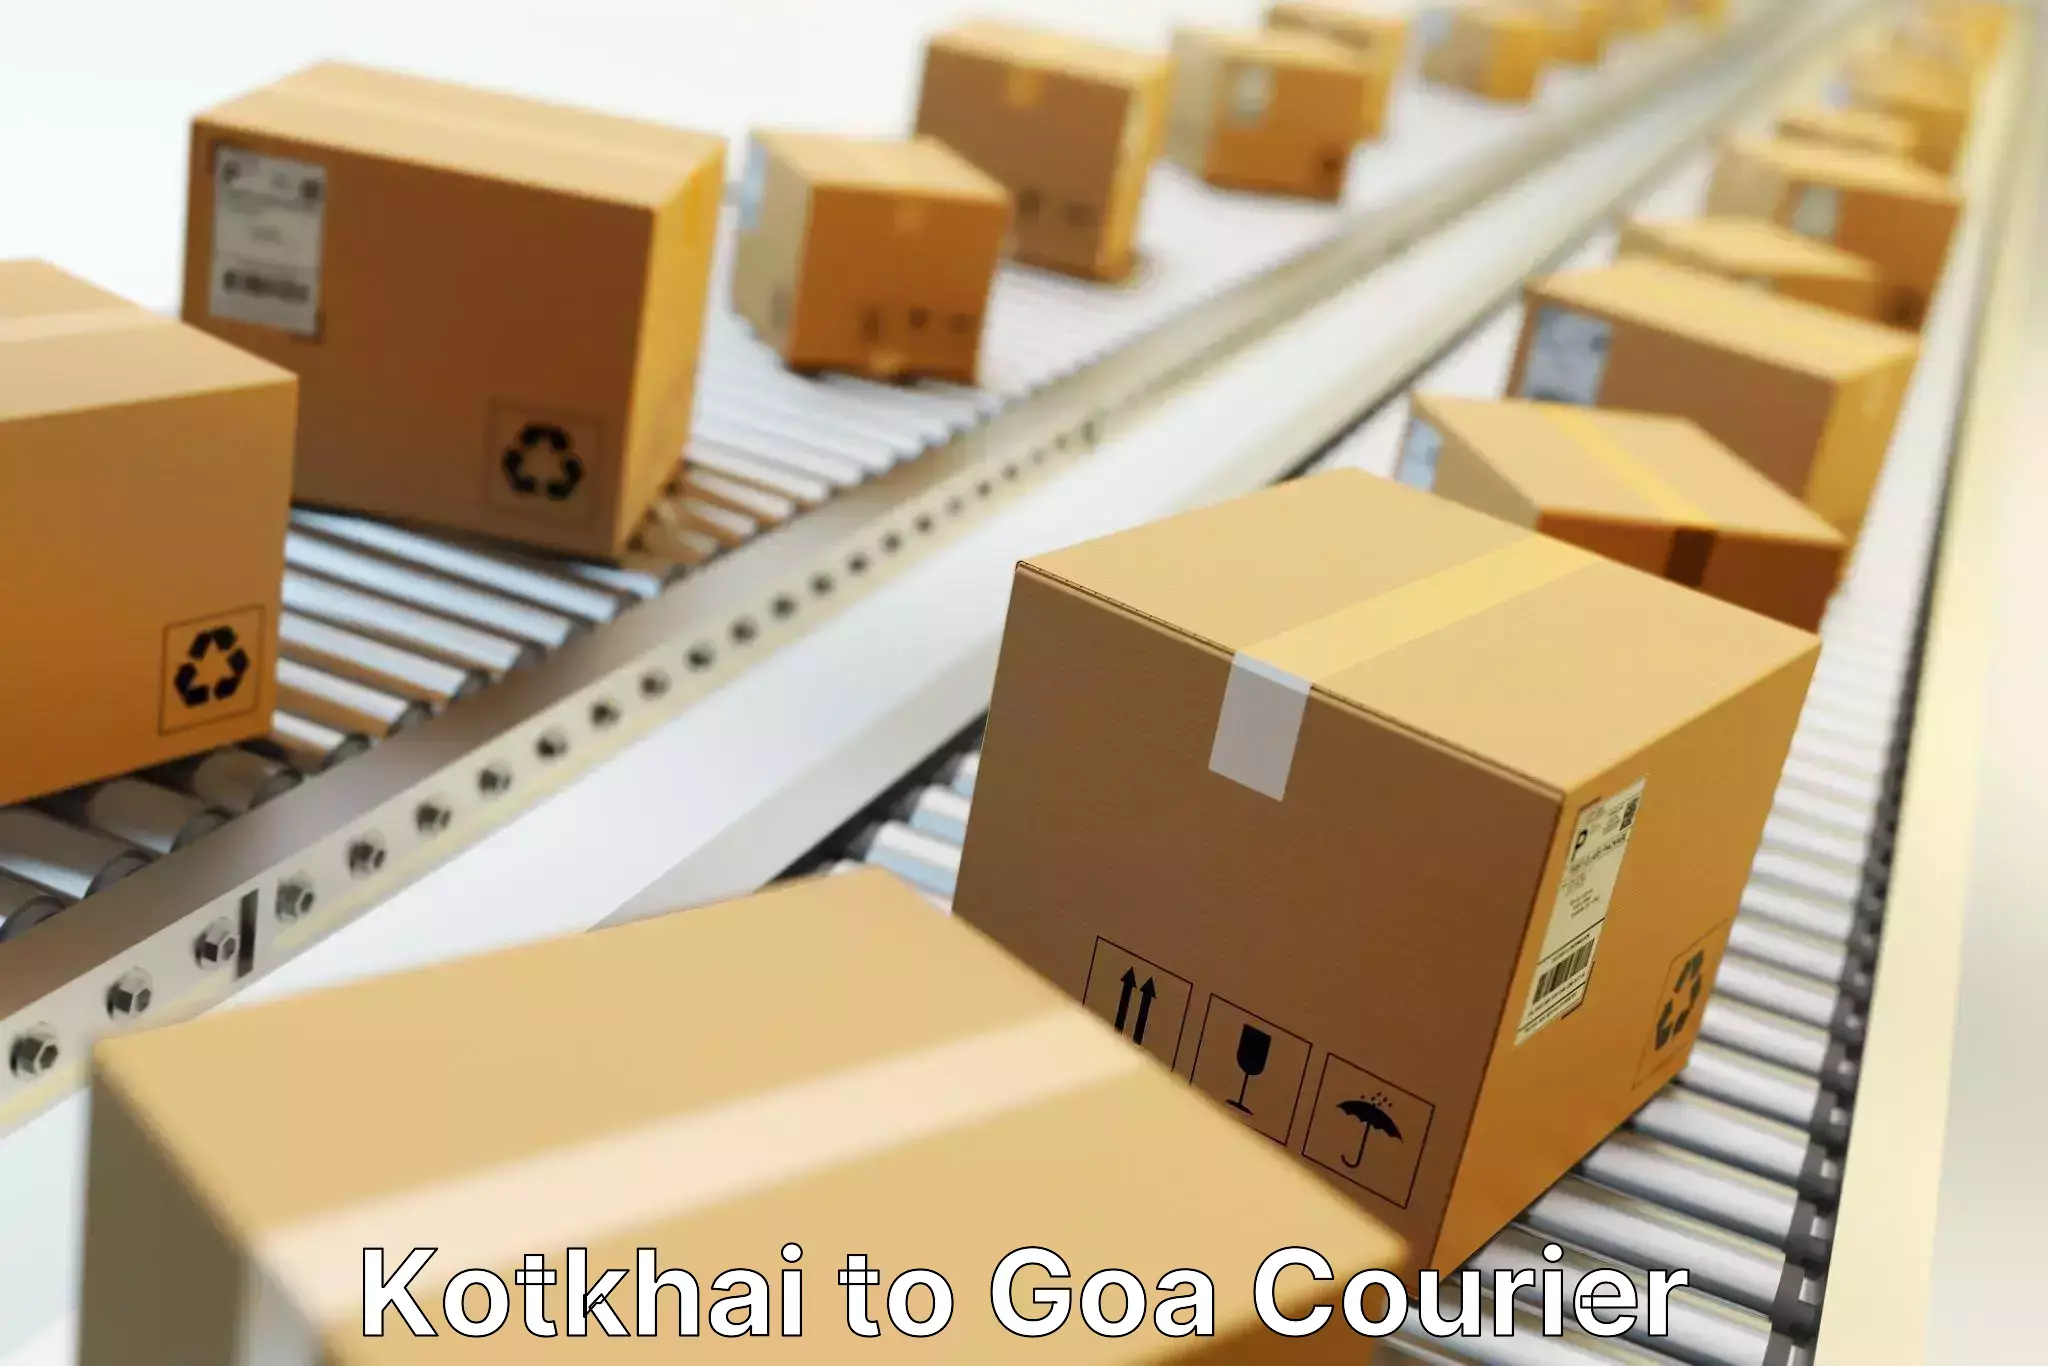 24/7 courier service Kotkhai to Goa